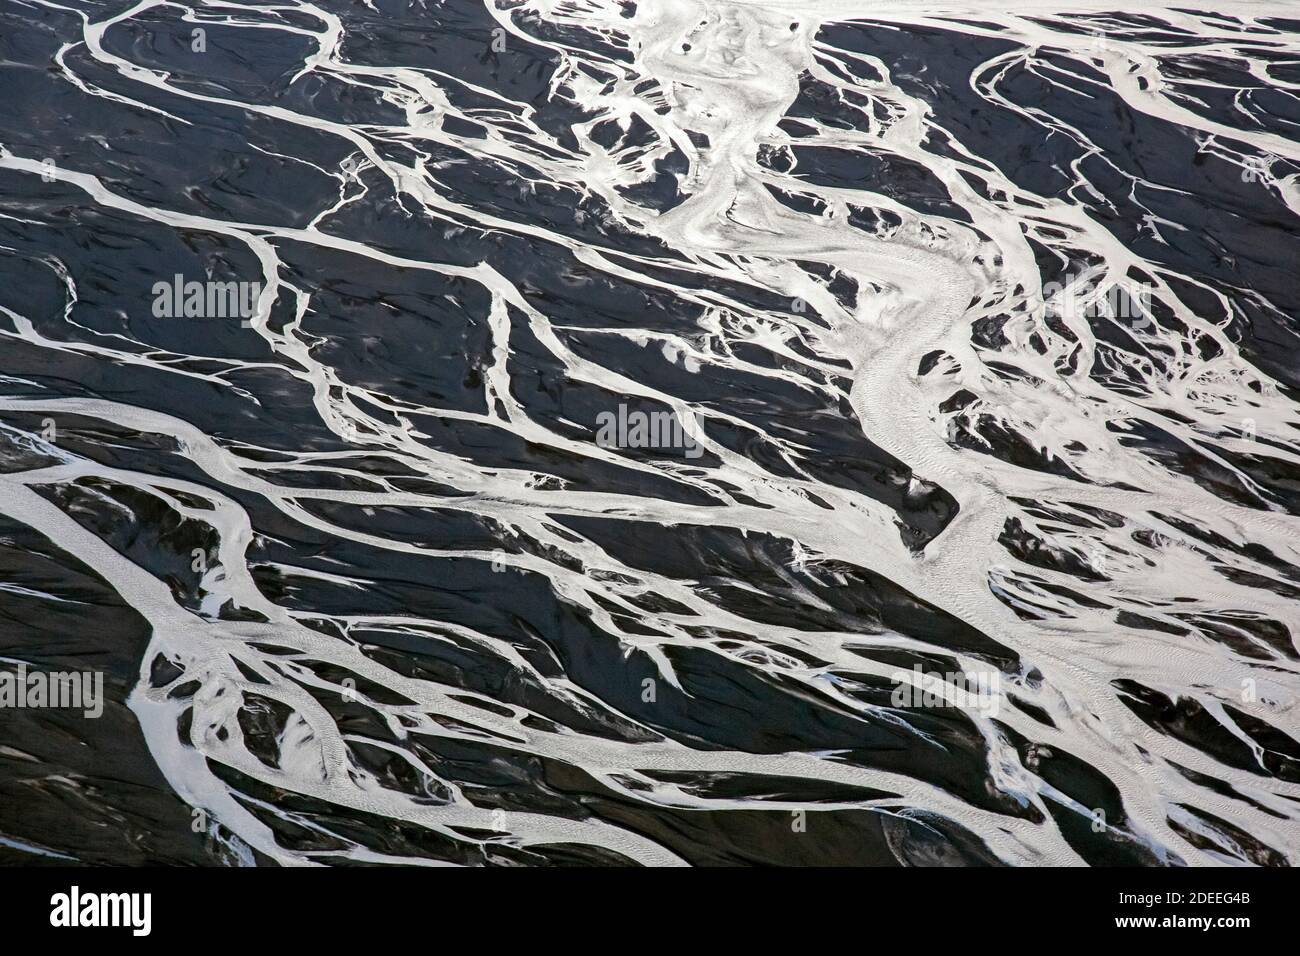 Vue aérienne sur le delta de la rivière Markarfljot, plaine de sable, formée de sédiments glaciaires déposés par les eaux de fonte en été, Islande Banque D'Images